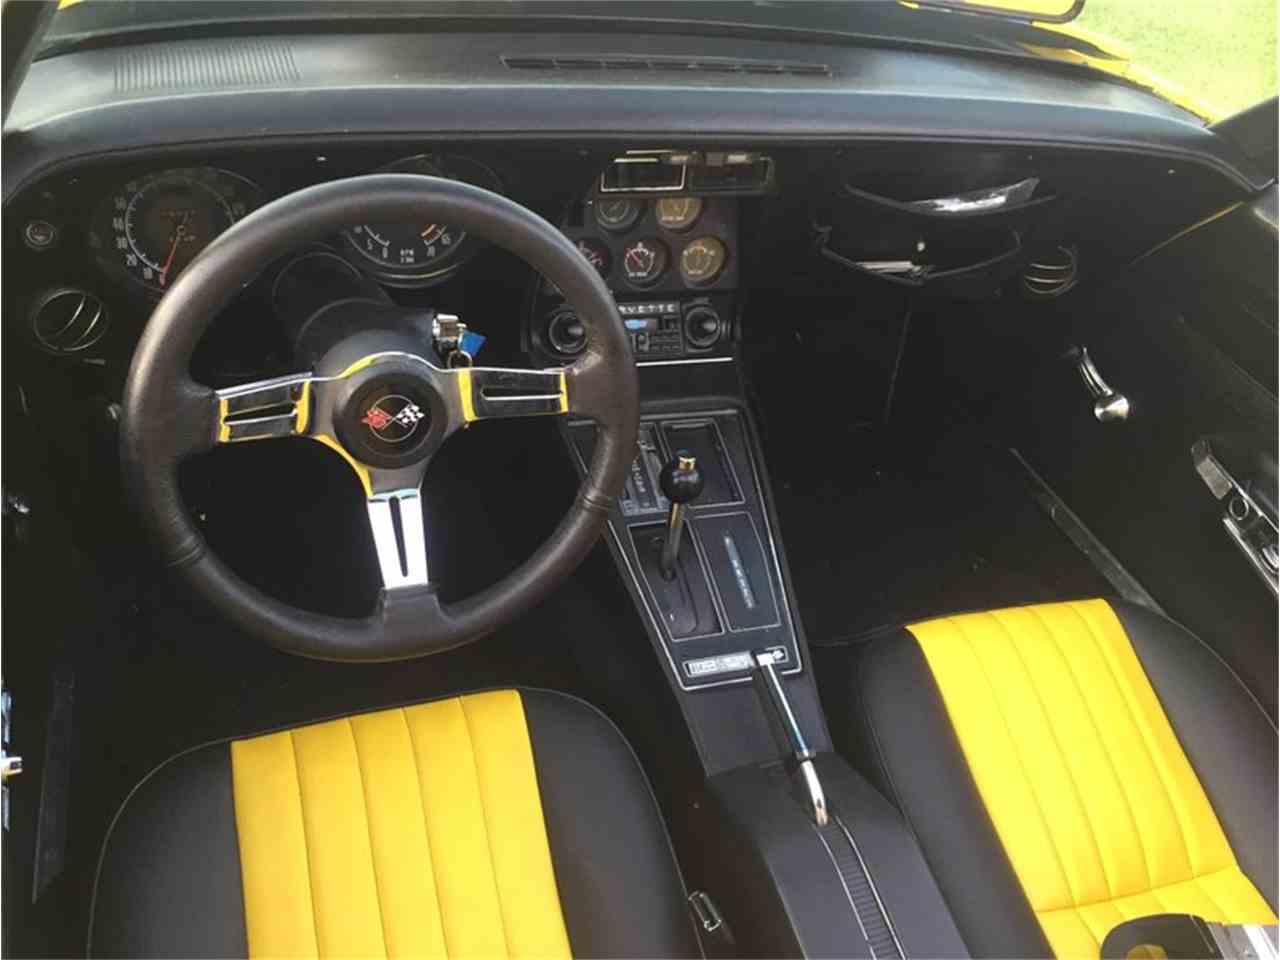 1973 Corvette C3 interior